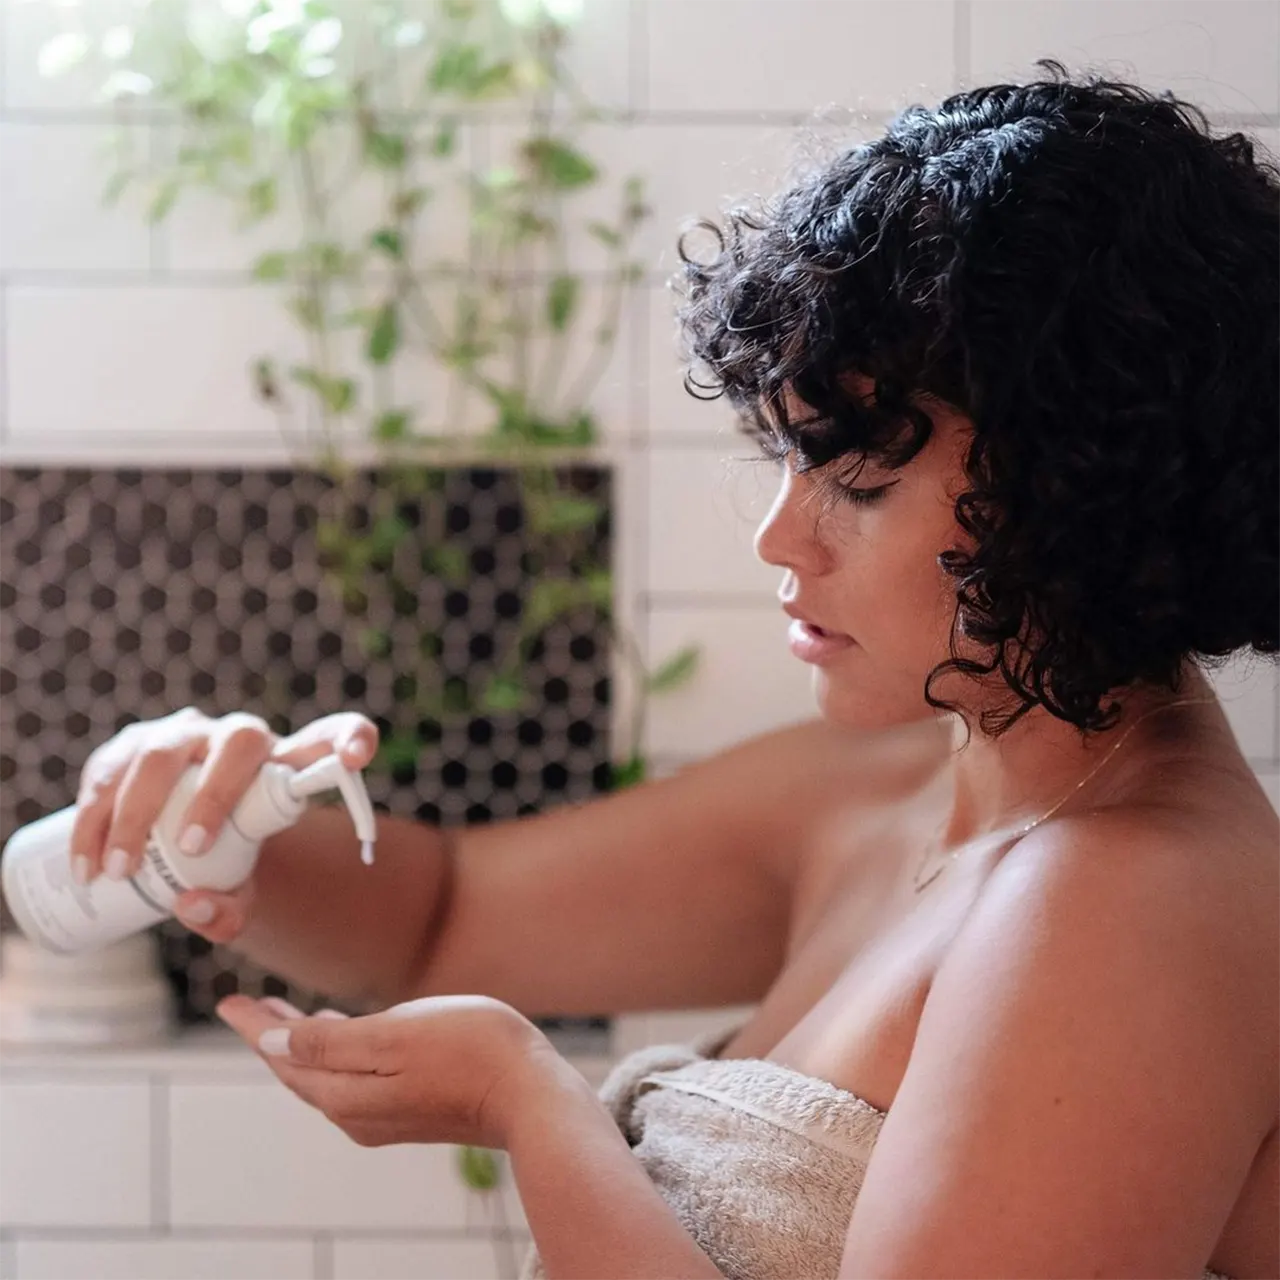 Eine Frau schüttet Shampoo in ihre Handfläche.